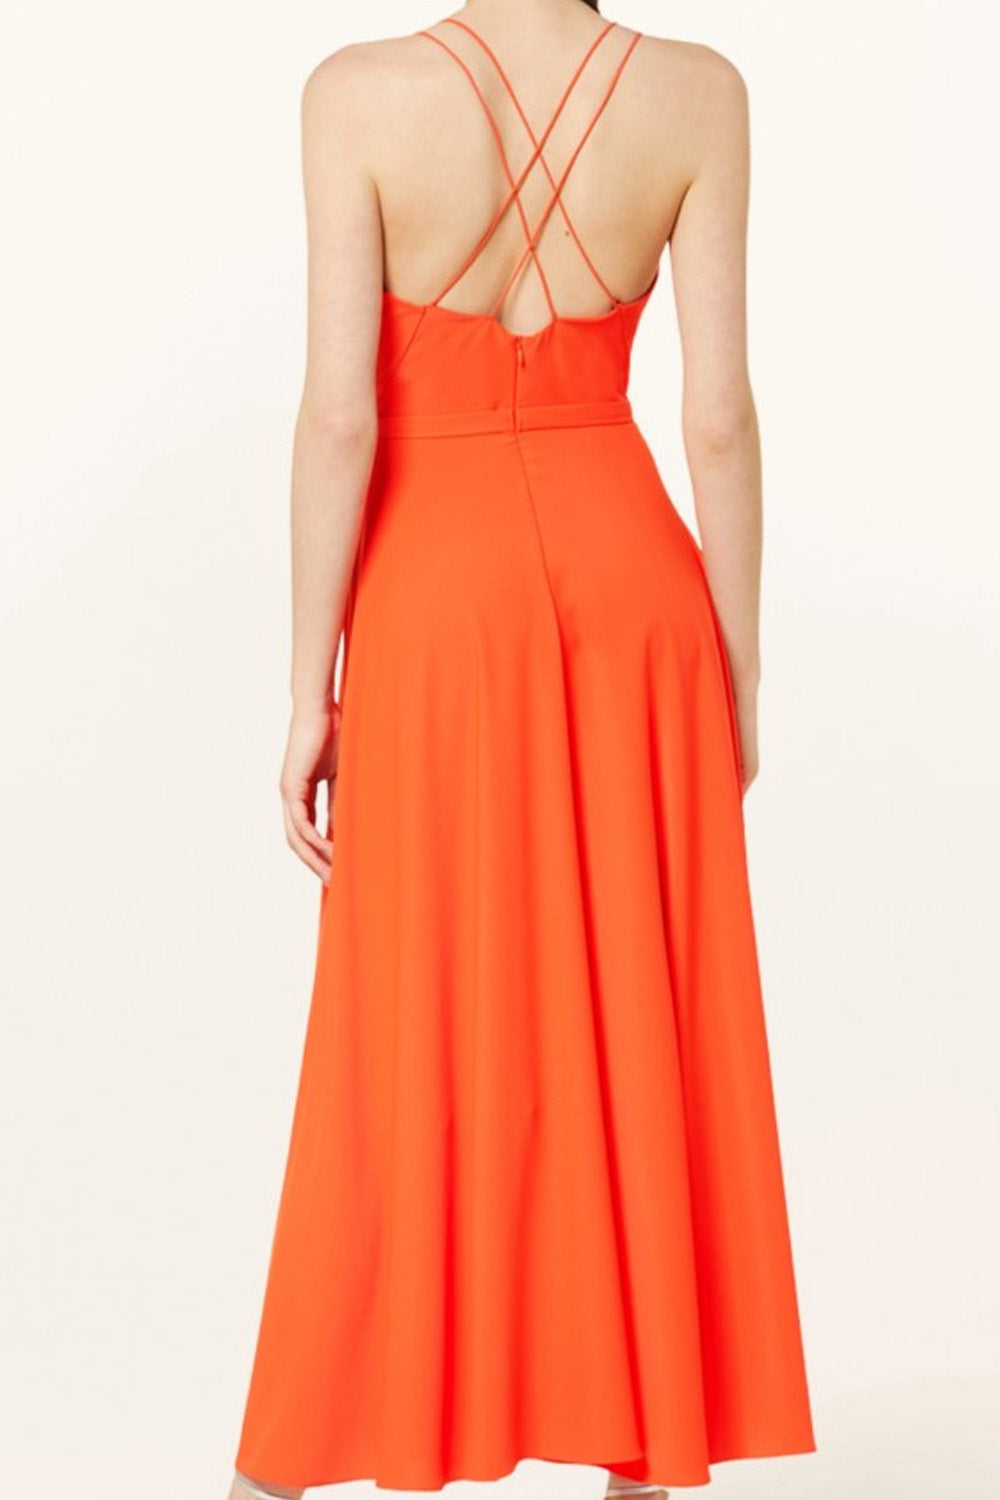 Realm Orange Dress